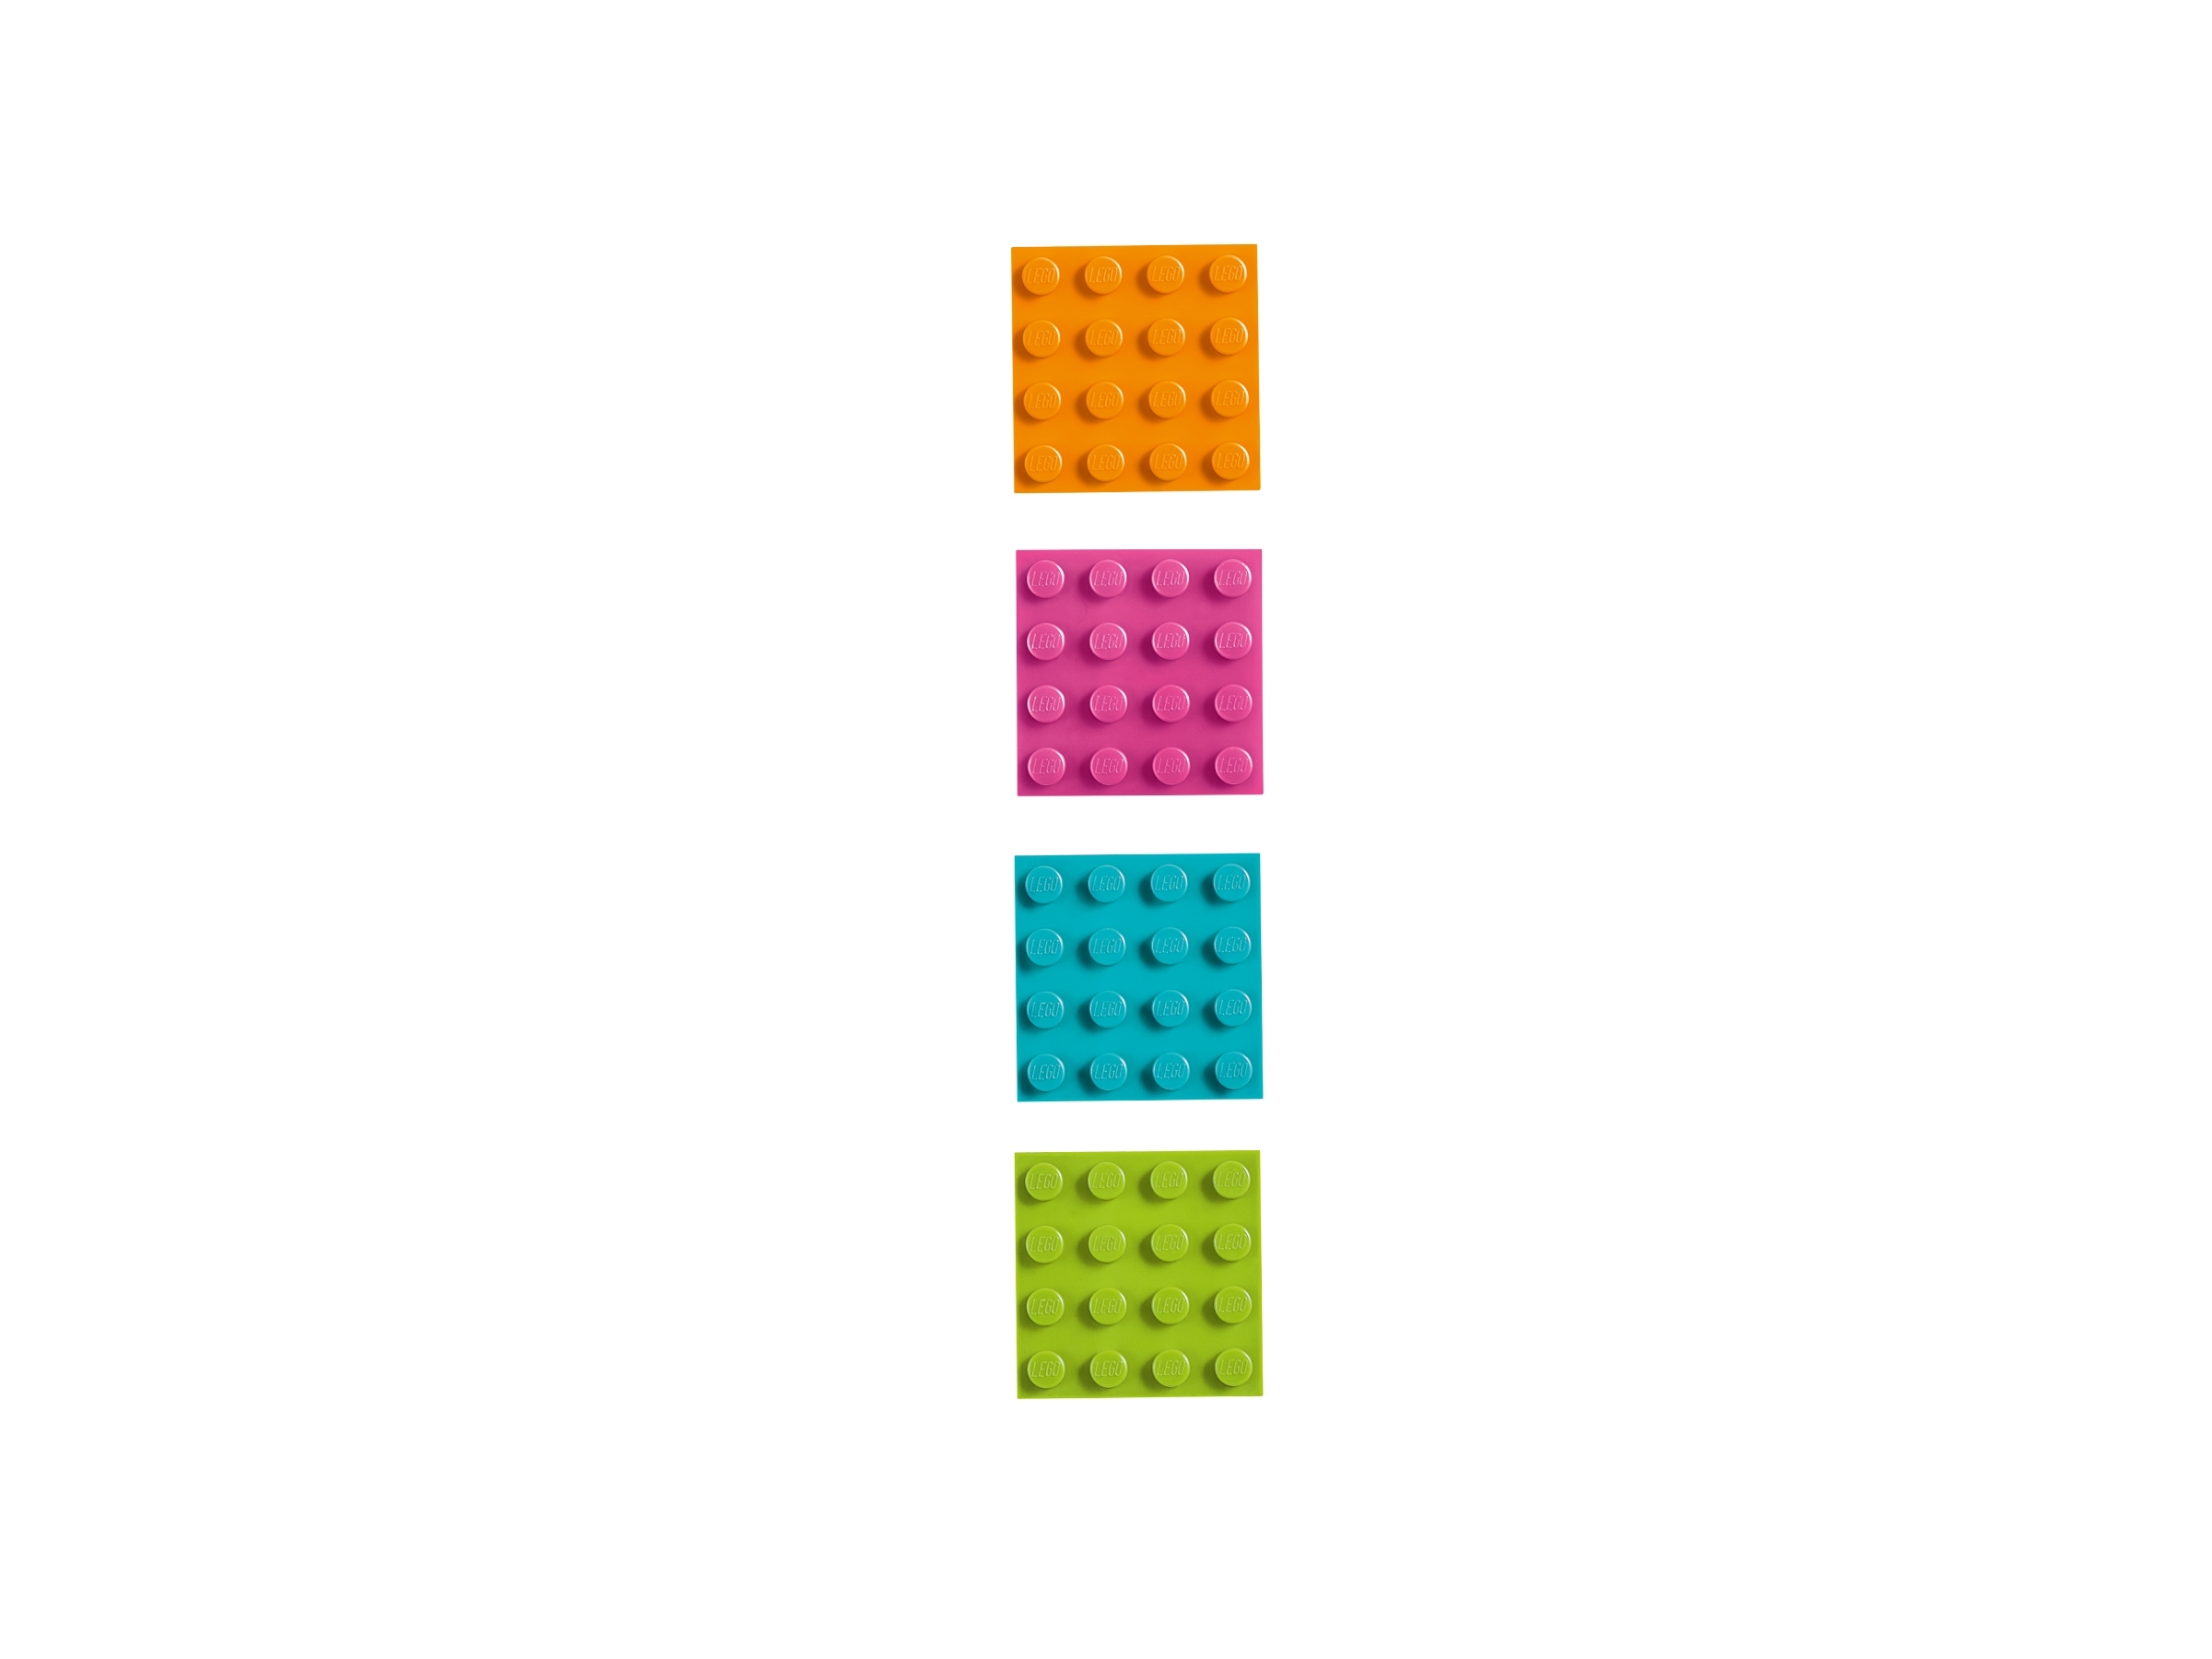 LEGO 4 x Magnethalter 2609 4 x Magnet 73092 schwarz 7776 65153 7153 6956 6862 